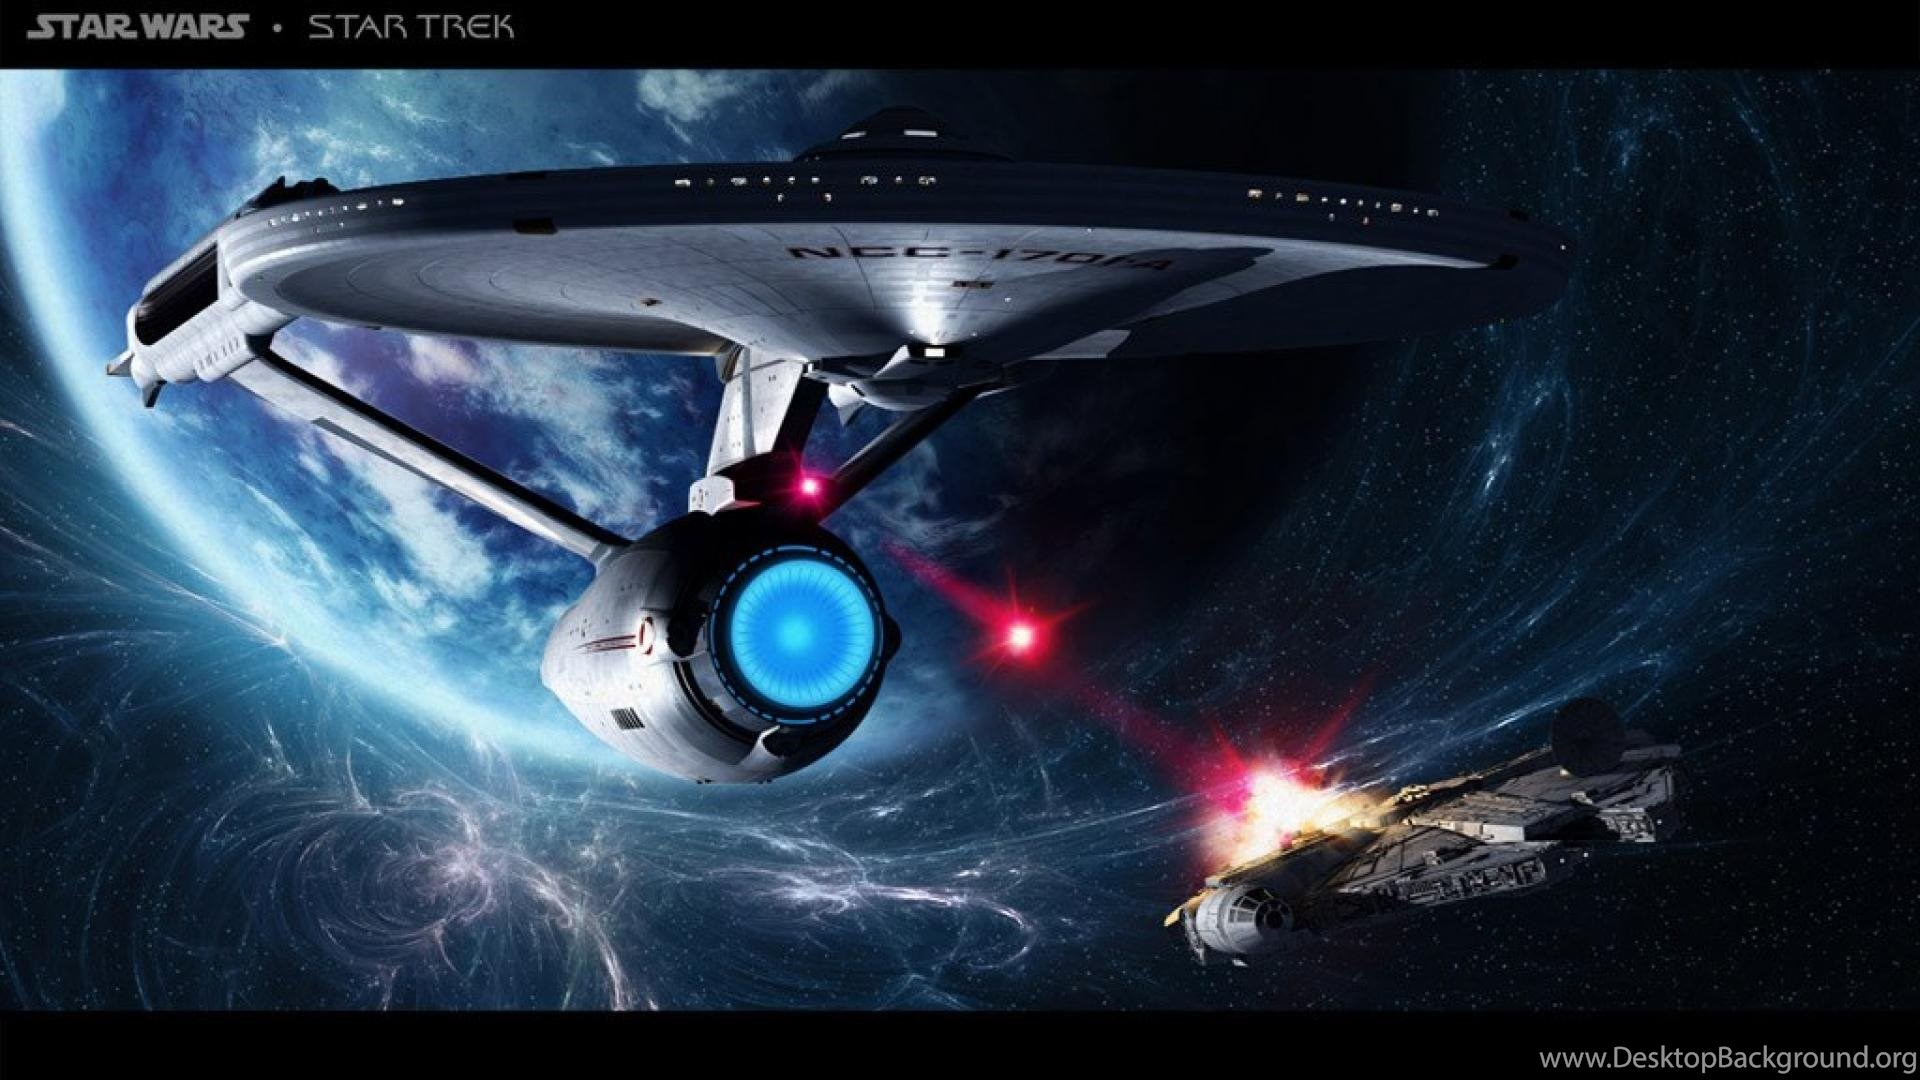 Star Trek Enterprise Fights Spaceship Battle Movie HD Wallpaper. Desktop Background